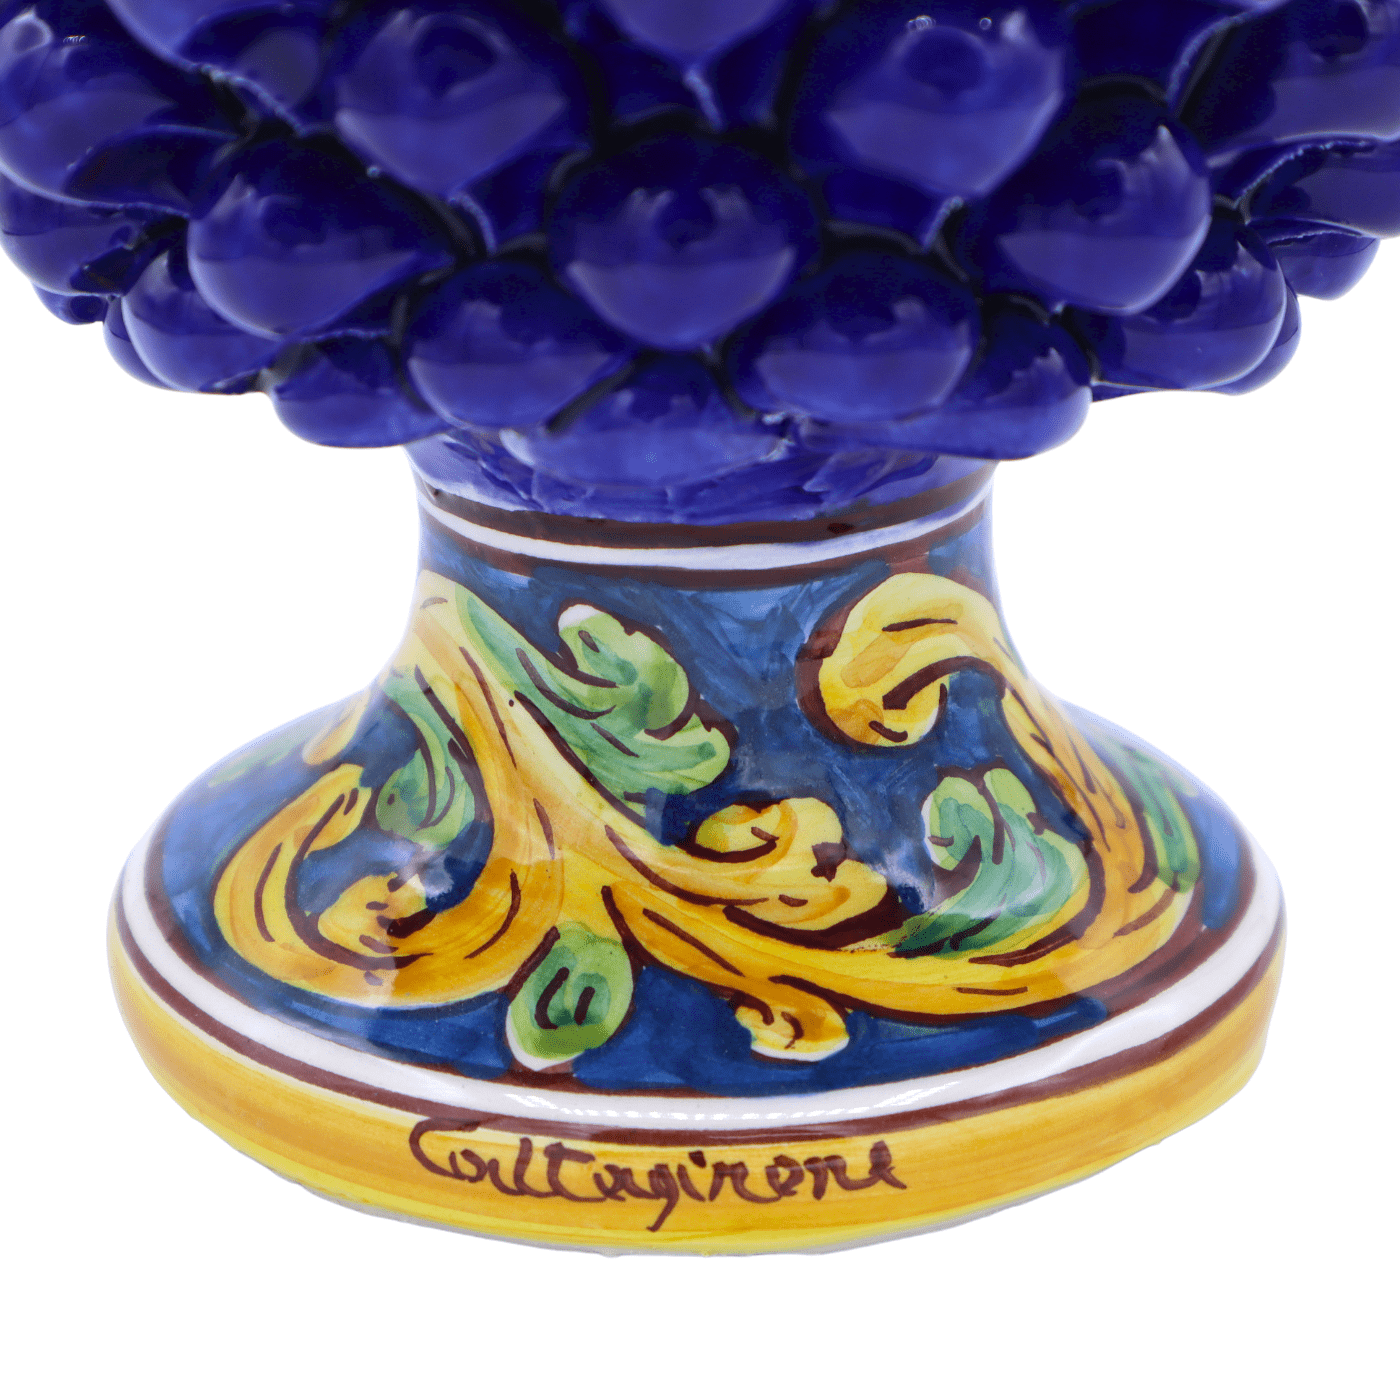 Voorkeur Omkleden achterlijk persoon Sicilian Pigna in keramiek van Caltagirone kleur Blue, stambaroque decoratie,  h25/26 cm approx. Mod